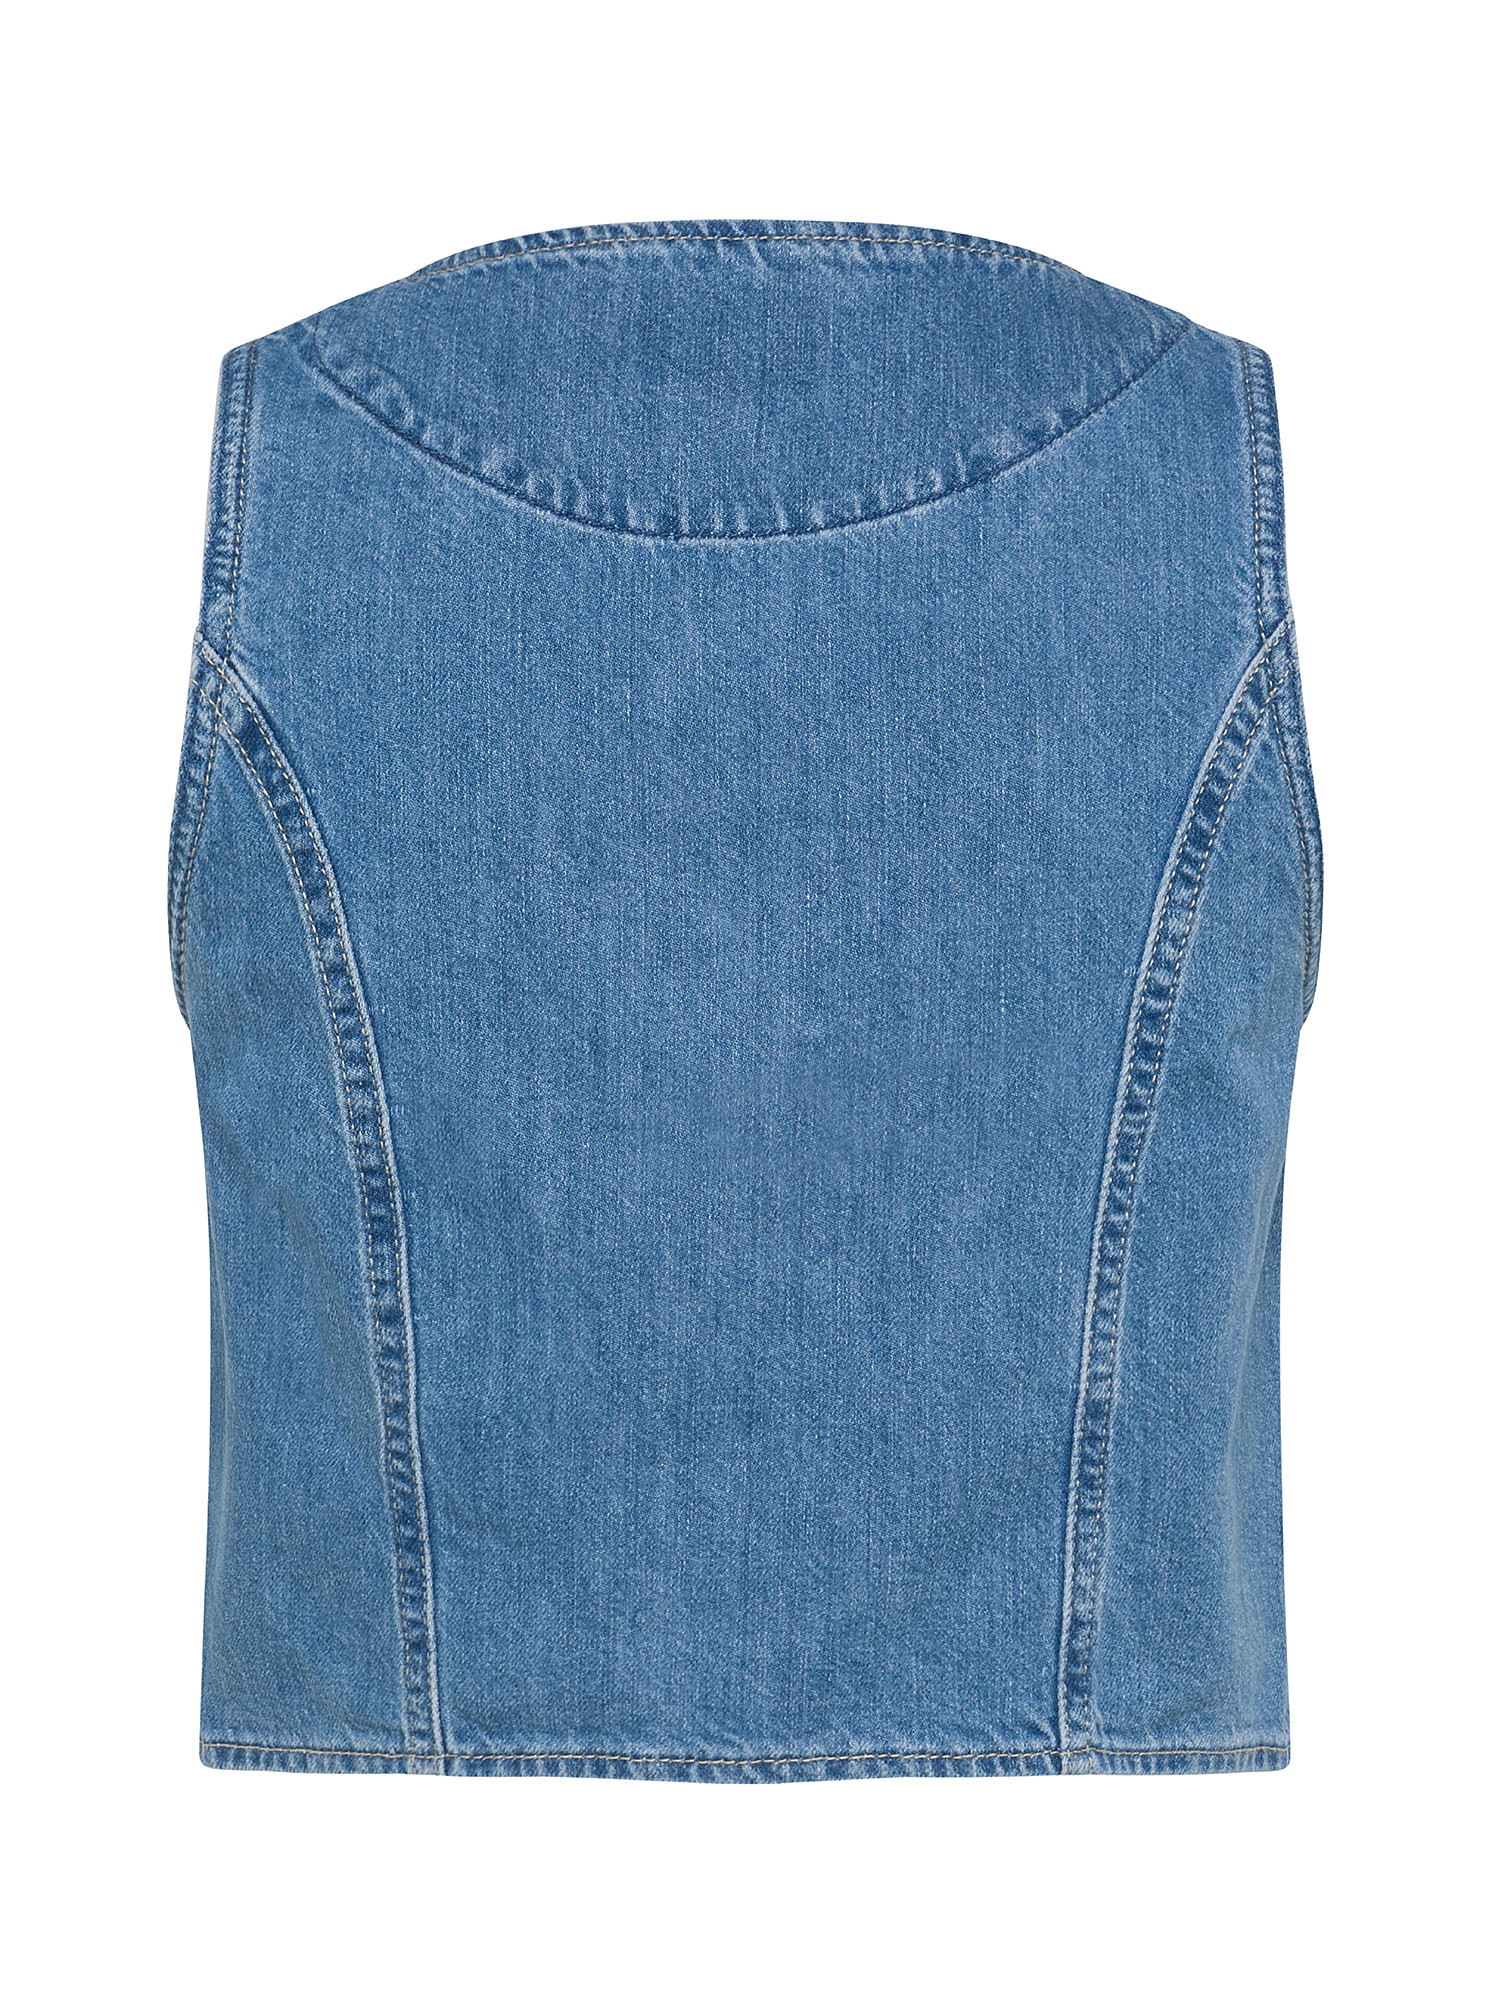 Pepe Jeans - Cropped denim vest, Denim, large image number 1